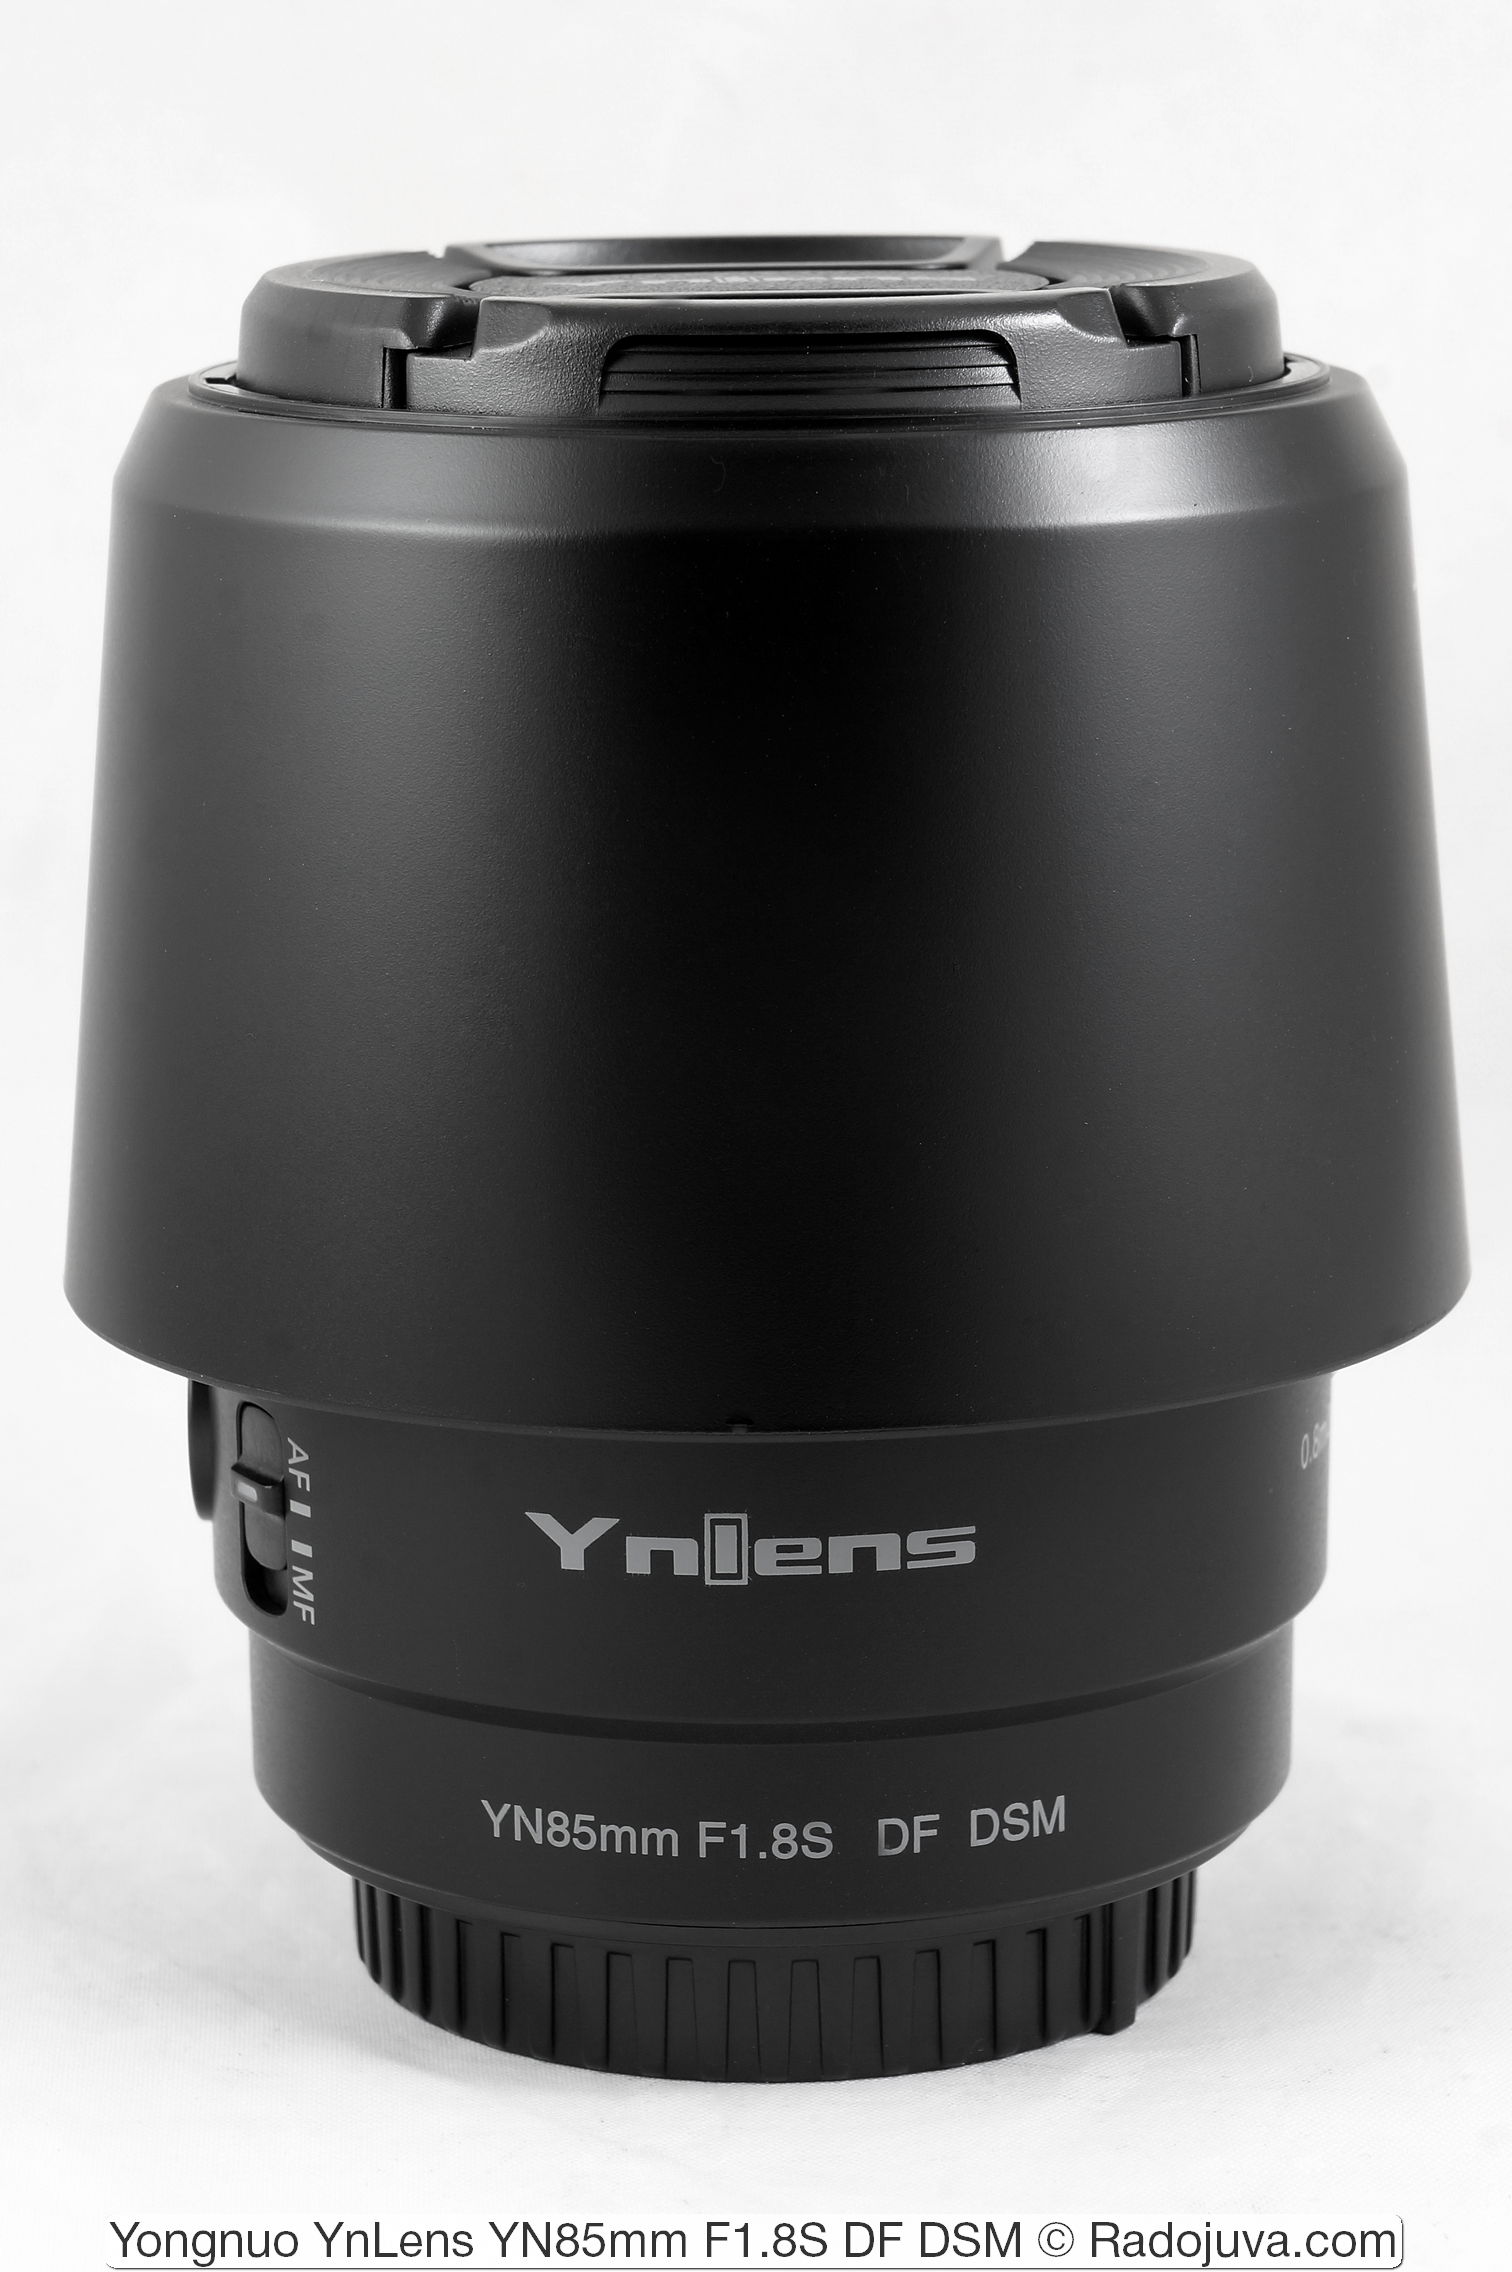 Yongnuo YnLens YN85mm F1.8S DF DSM (para Sony E/FE)